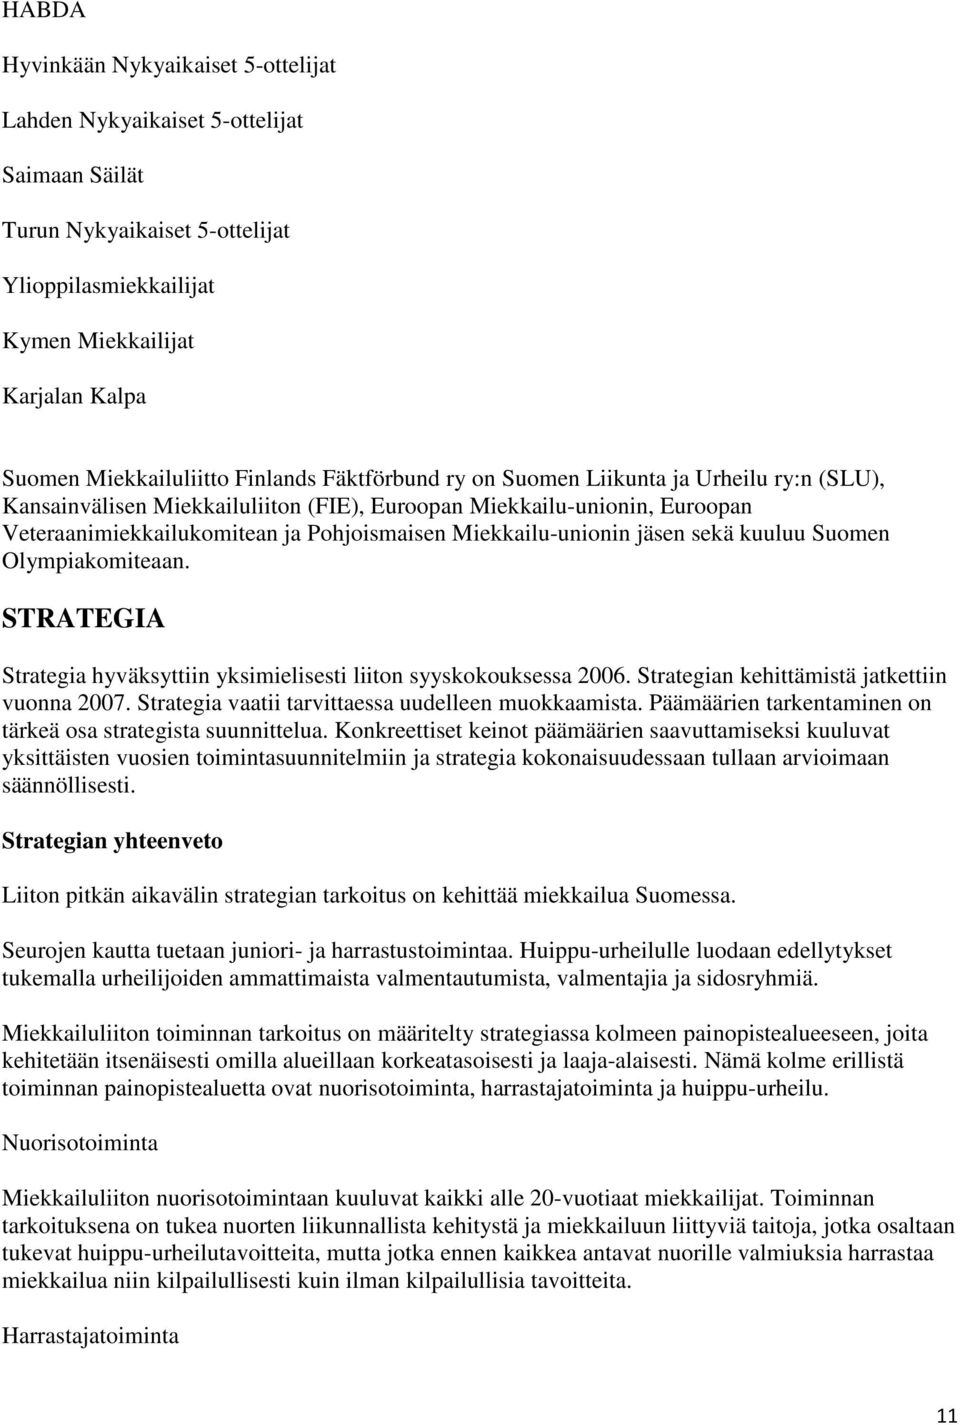 Miekkailu-unionin jäsen sekä kuuluu Suomen Olympiakomiteaan. STRATEGIA Strategia hyväksyttiin yksimielisesti liiton syyskokouksessa 2006. Strategian kehittämistä jatkettiin vuonna 2007.